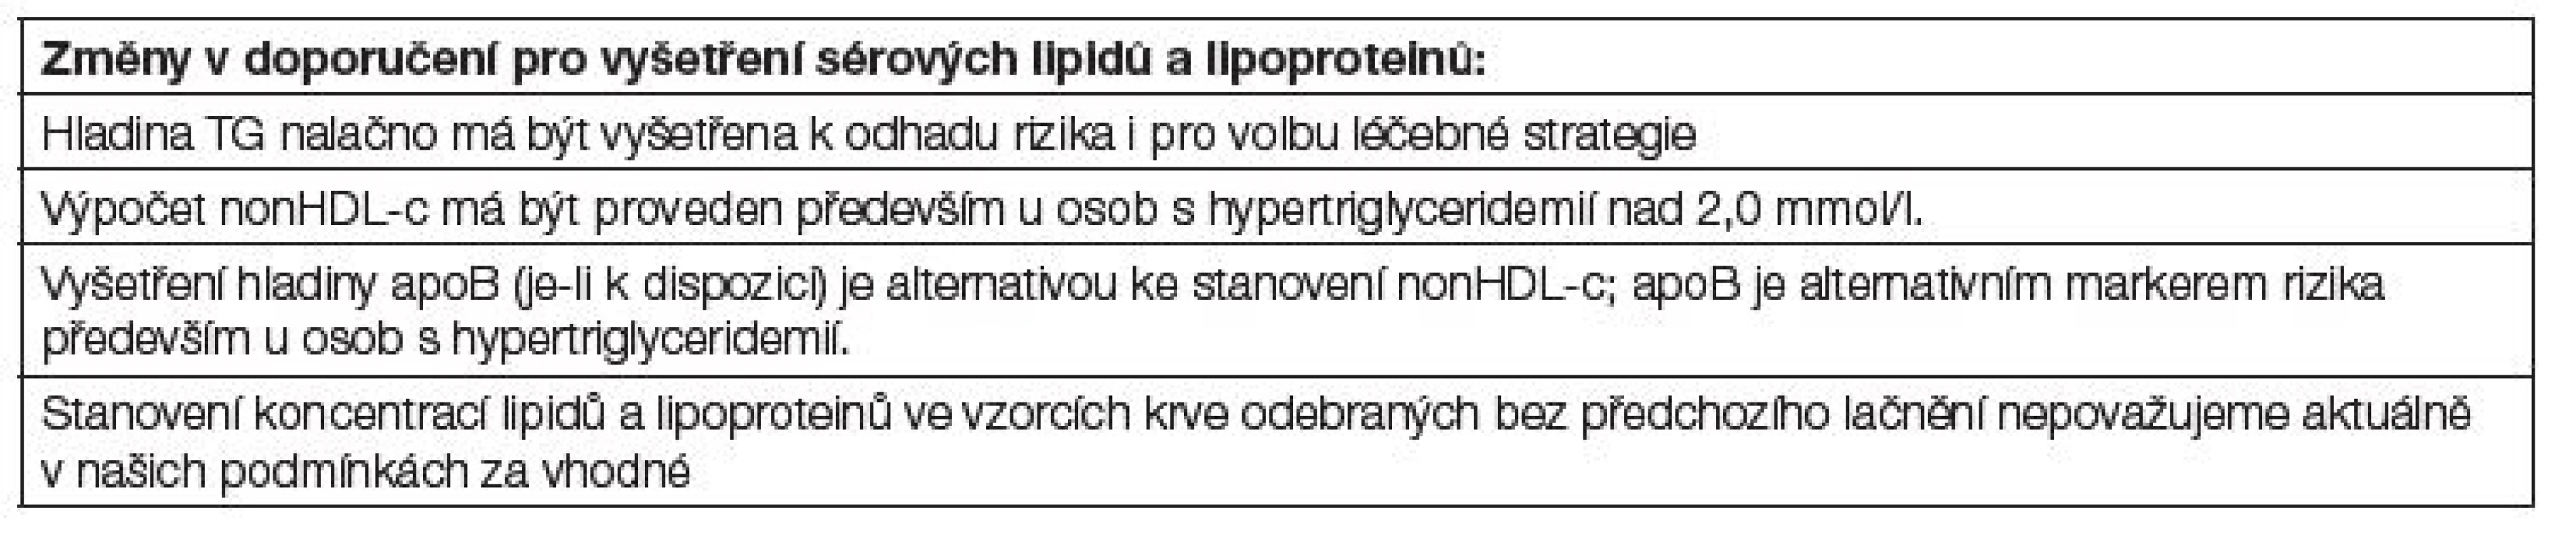 Změny v doporučení pro vyšetření sérových lipidů a lipoproteinů